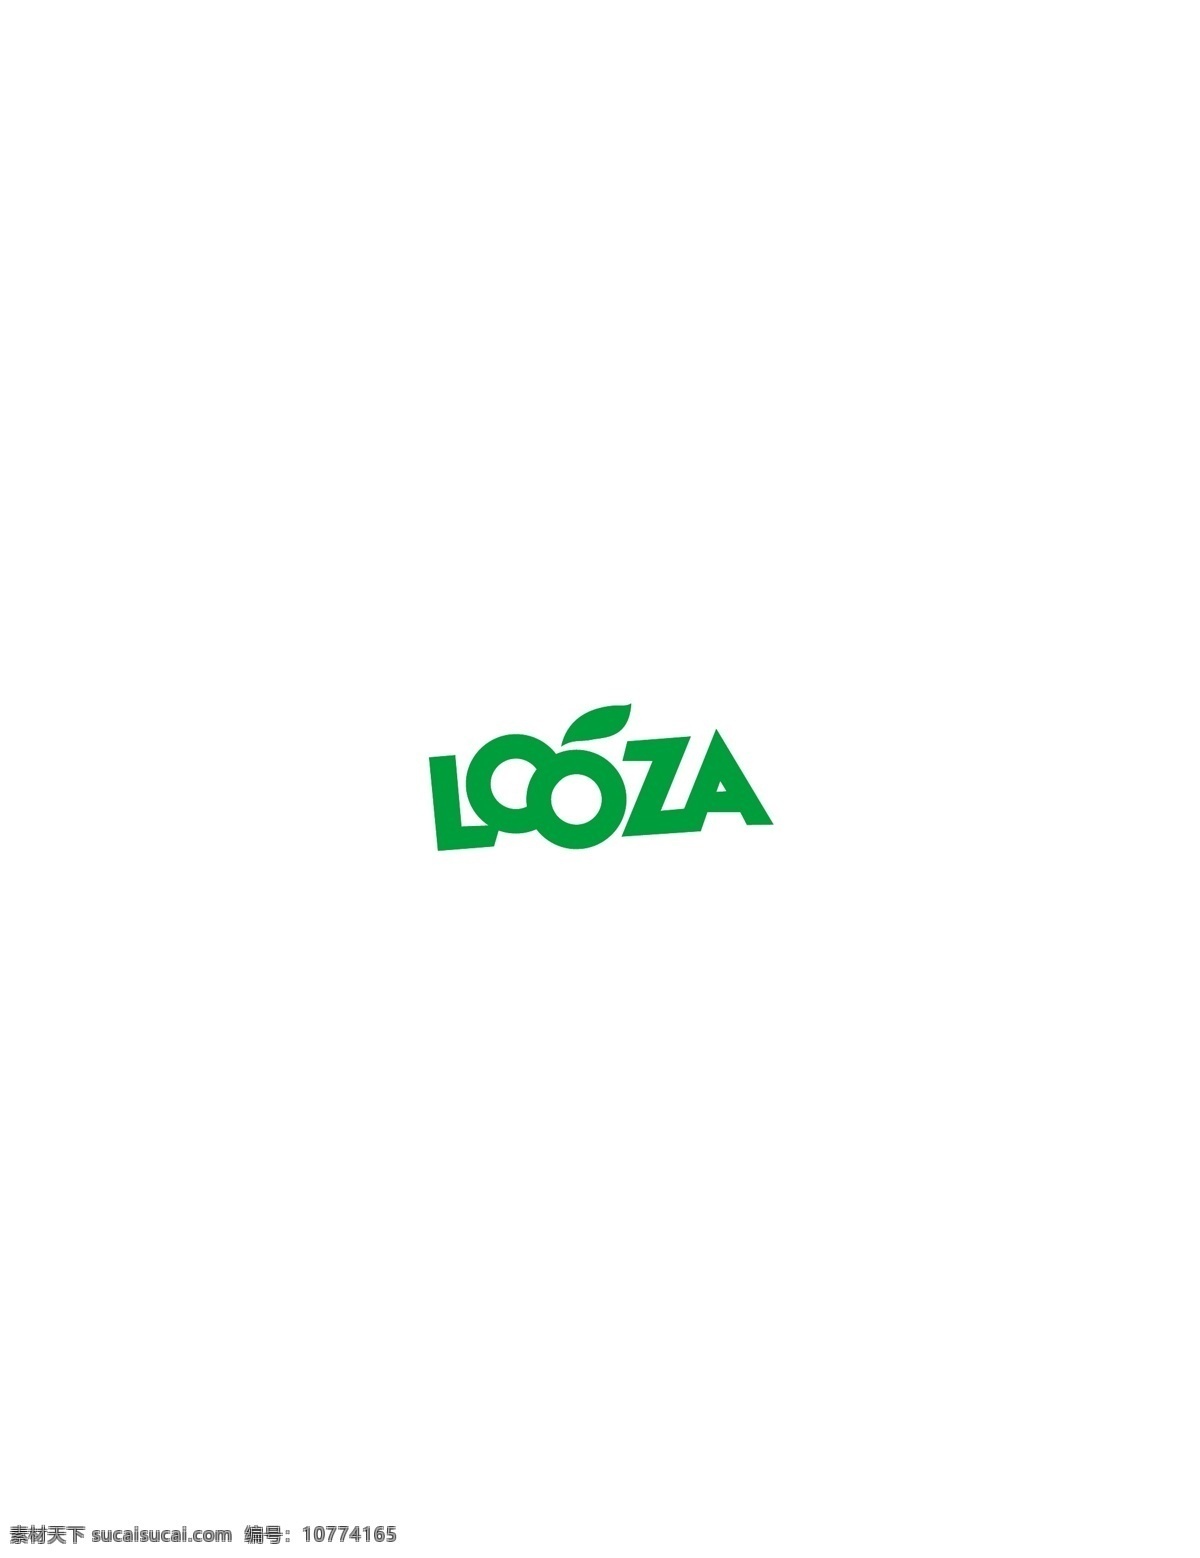 looza logo大全 logo 设计欣赏 商业矢量 矢量下载 食物 品牌 标志 标志设计 欣赏 网页矢量 矢量图 其他矢量图